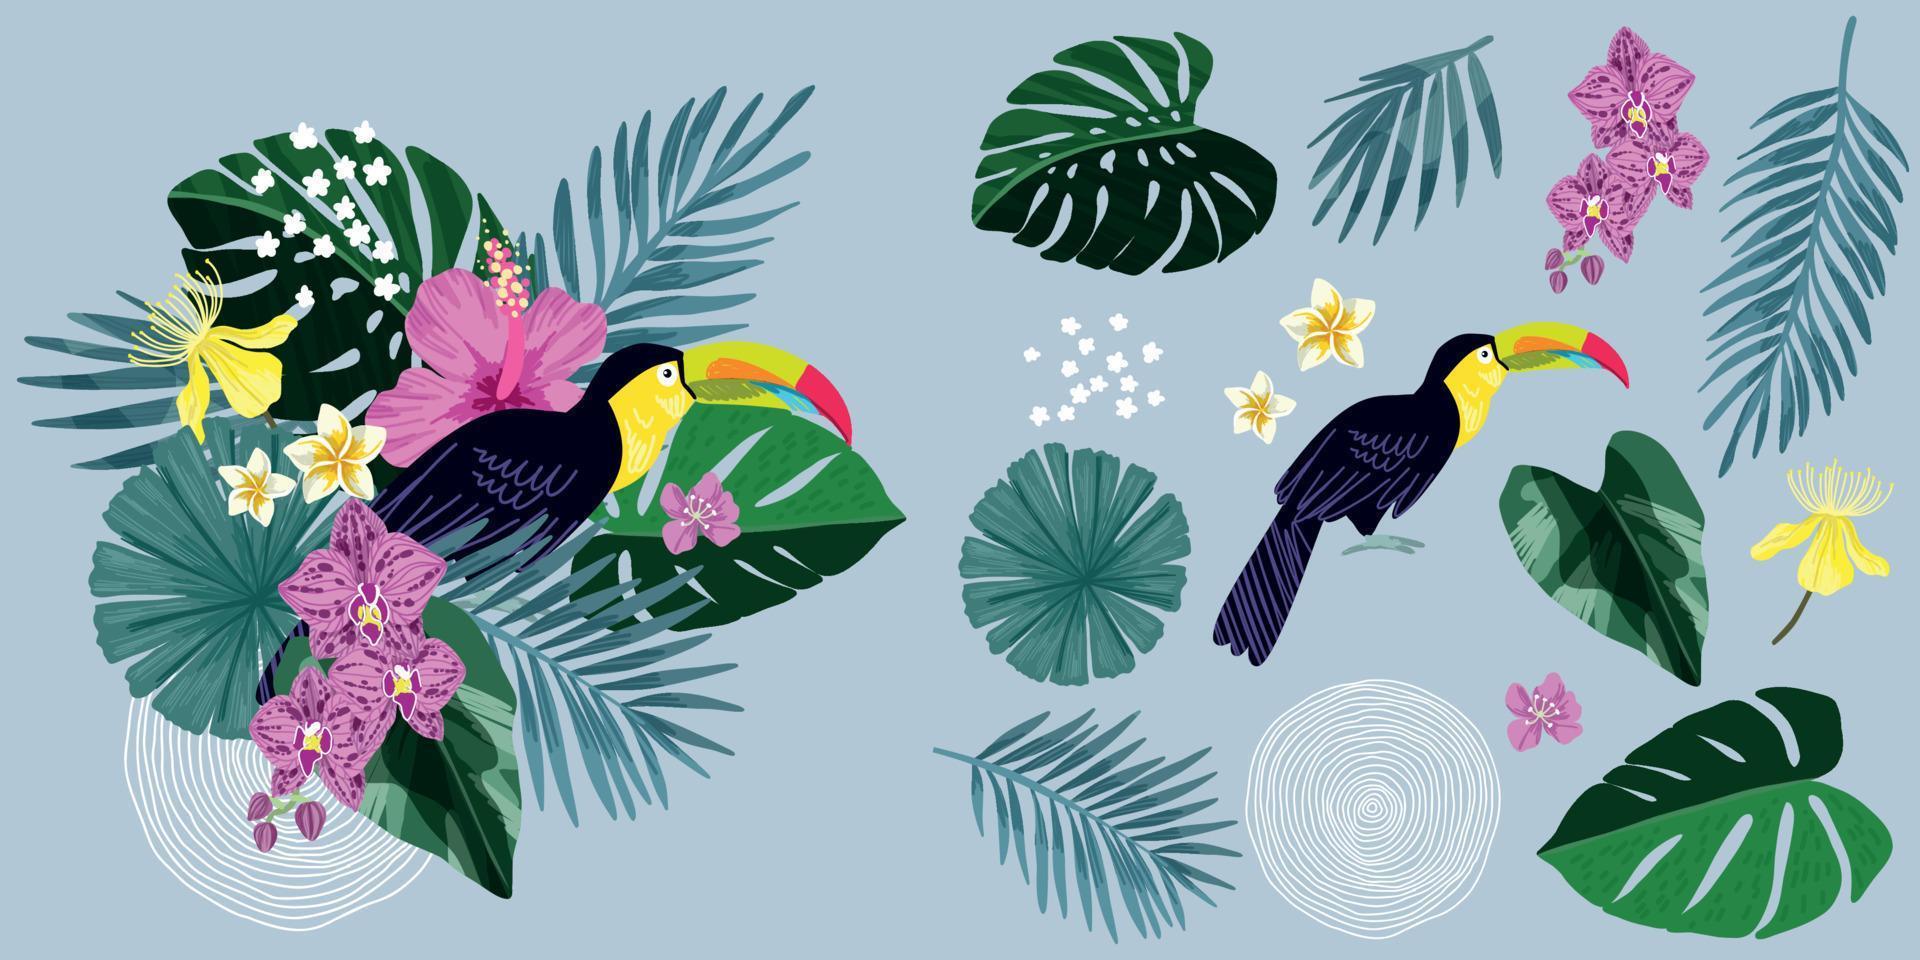 composição tropical com tucano e folhas e flores tropicais vetor